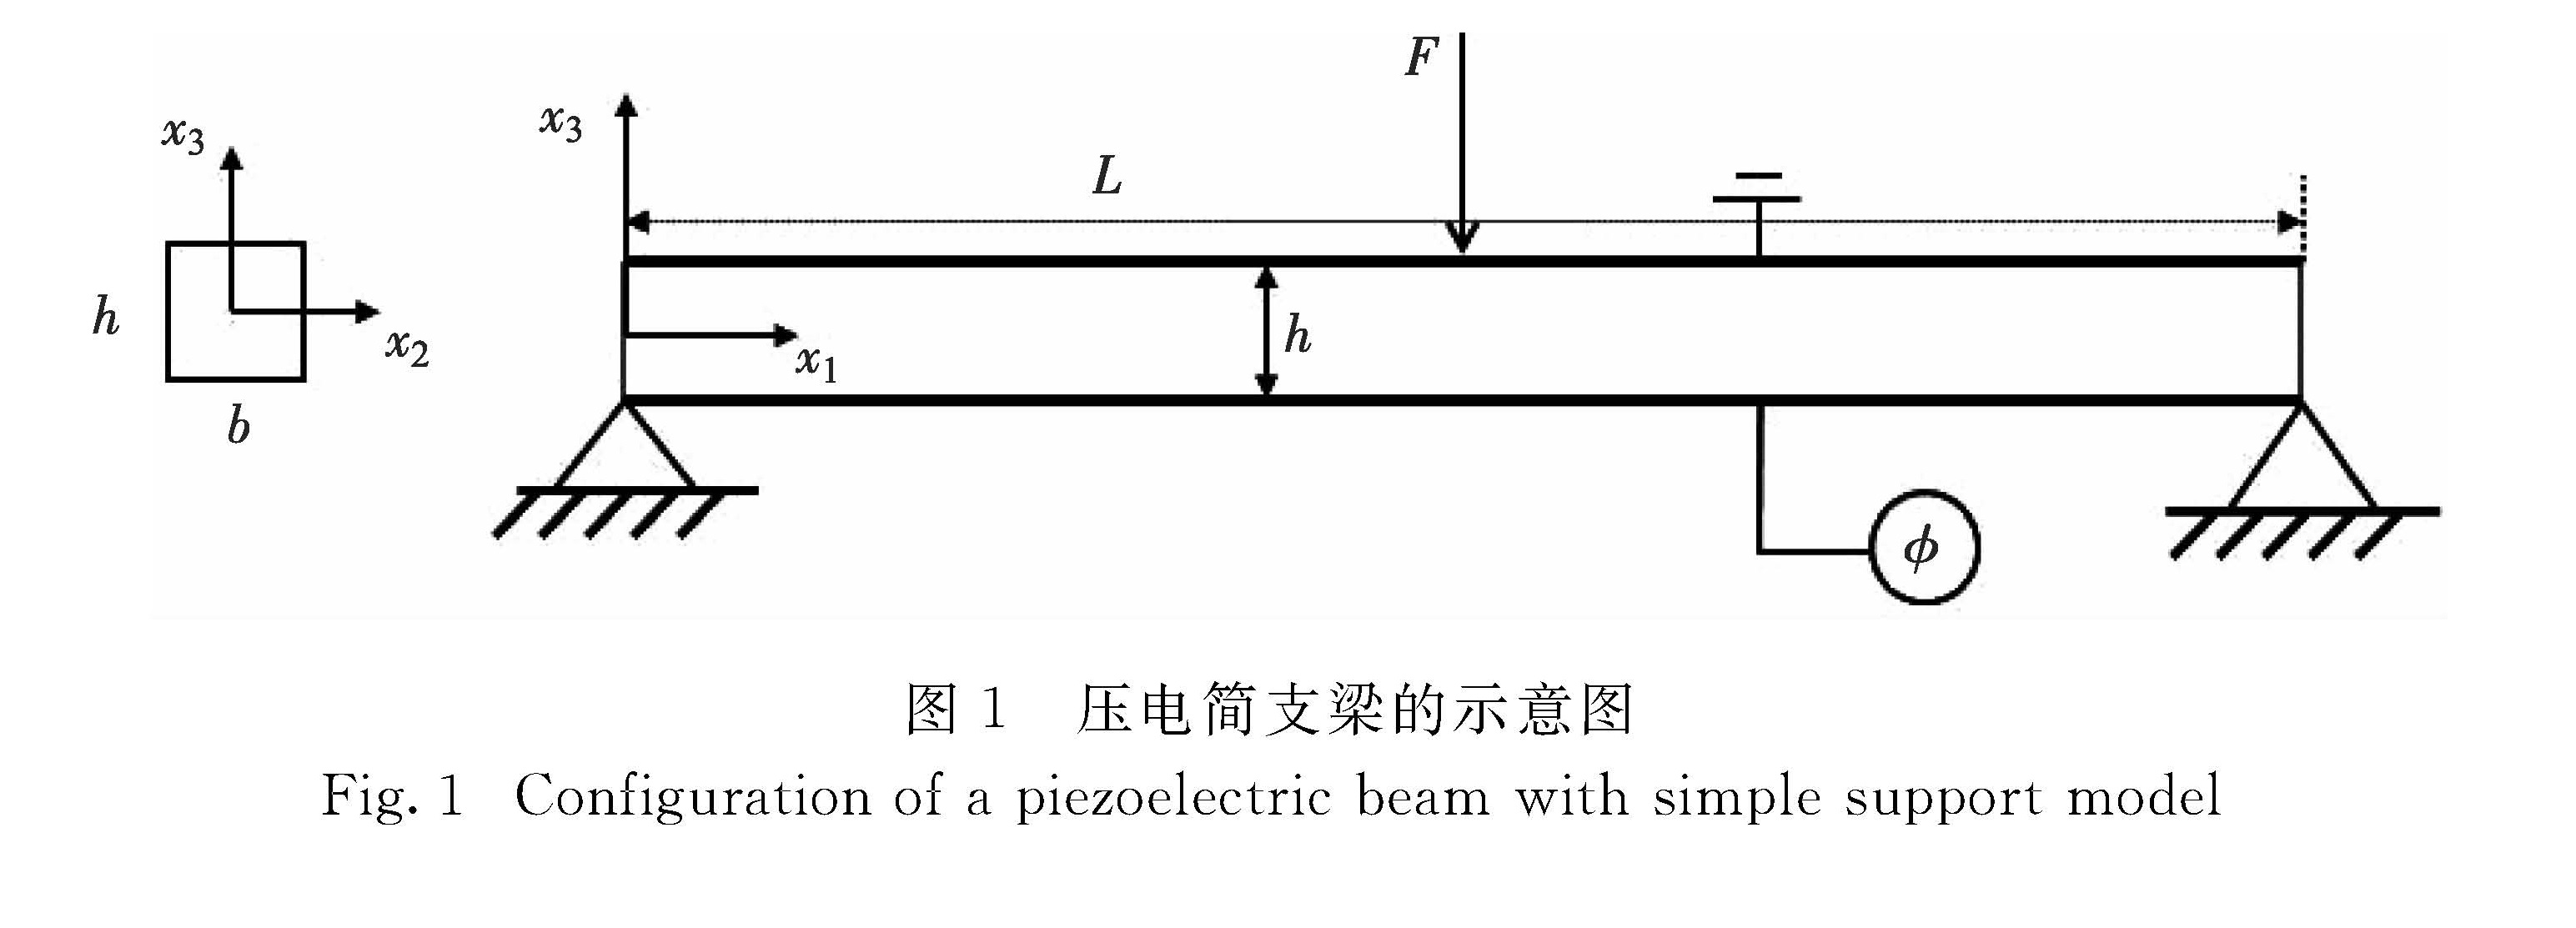 图1 压电简支梁的示意图<br/>Fig.1 Configuration of a piezoelectric beam with simple support model